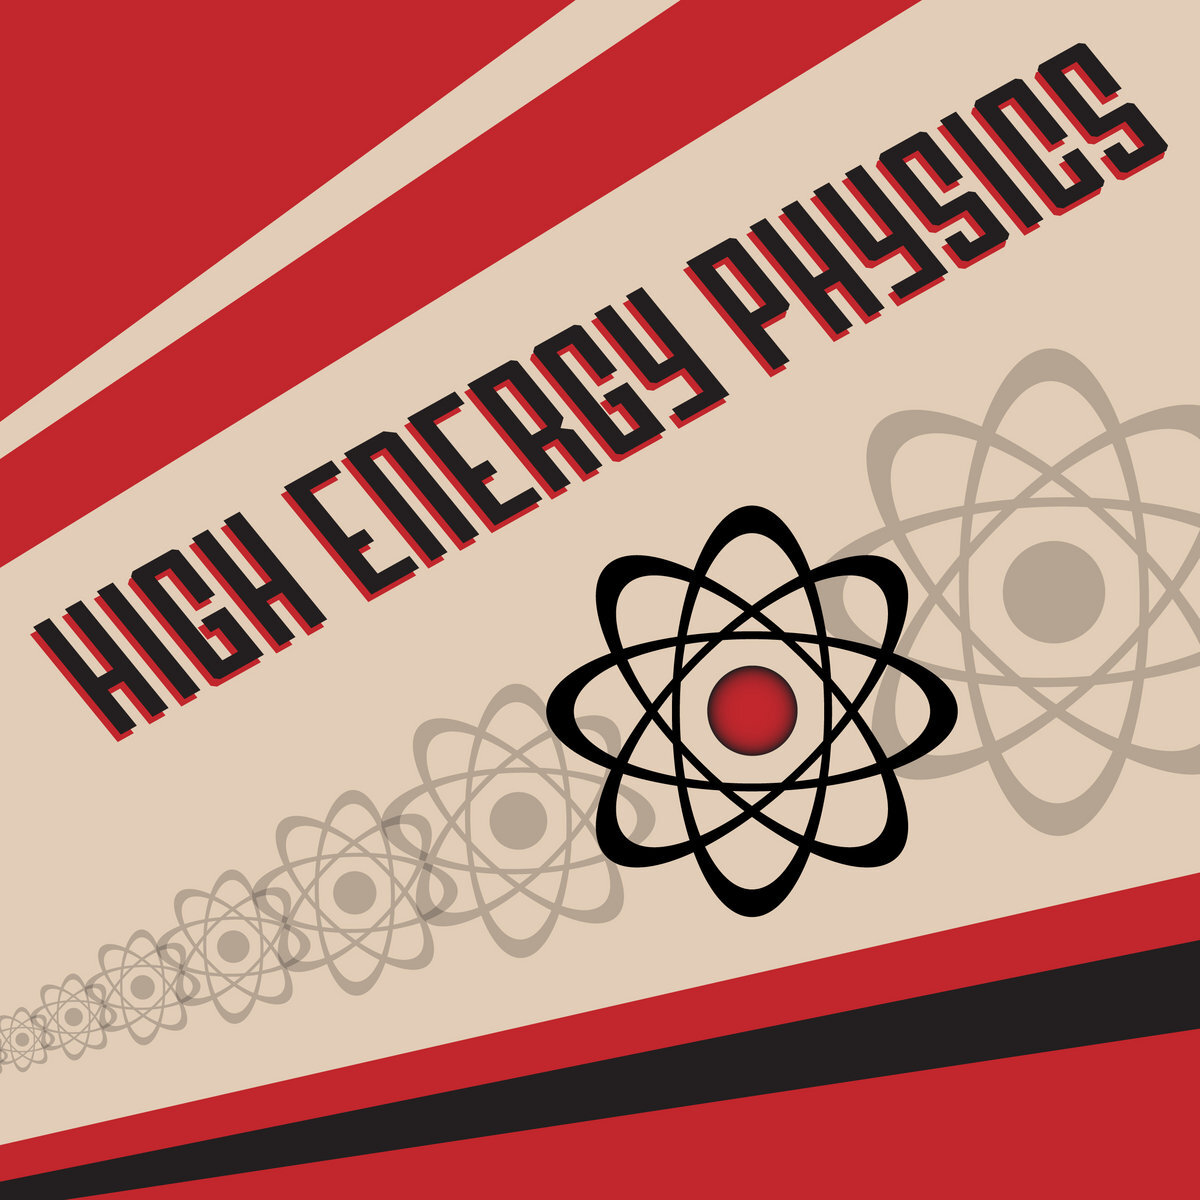 HIGH ENERGY PHYSICS (2012)